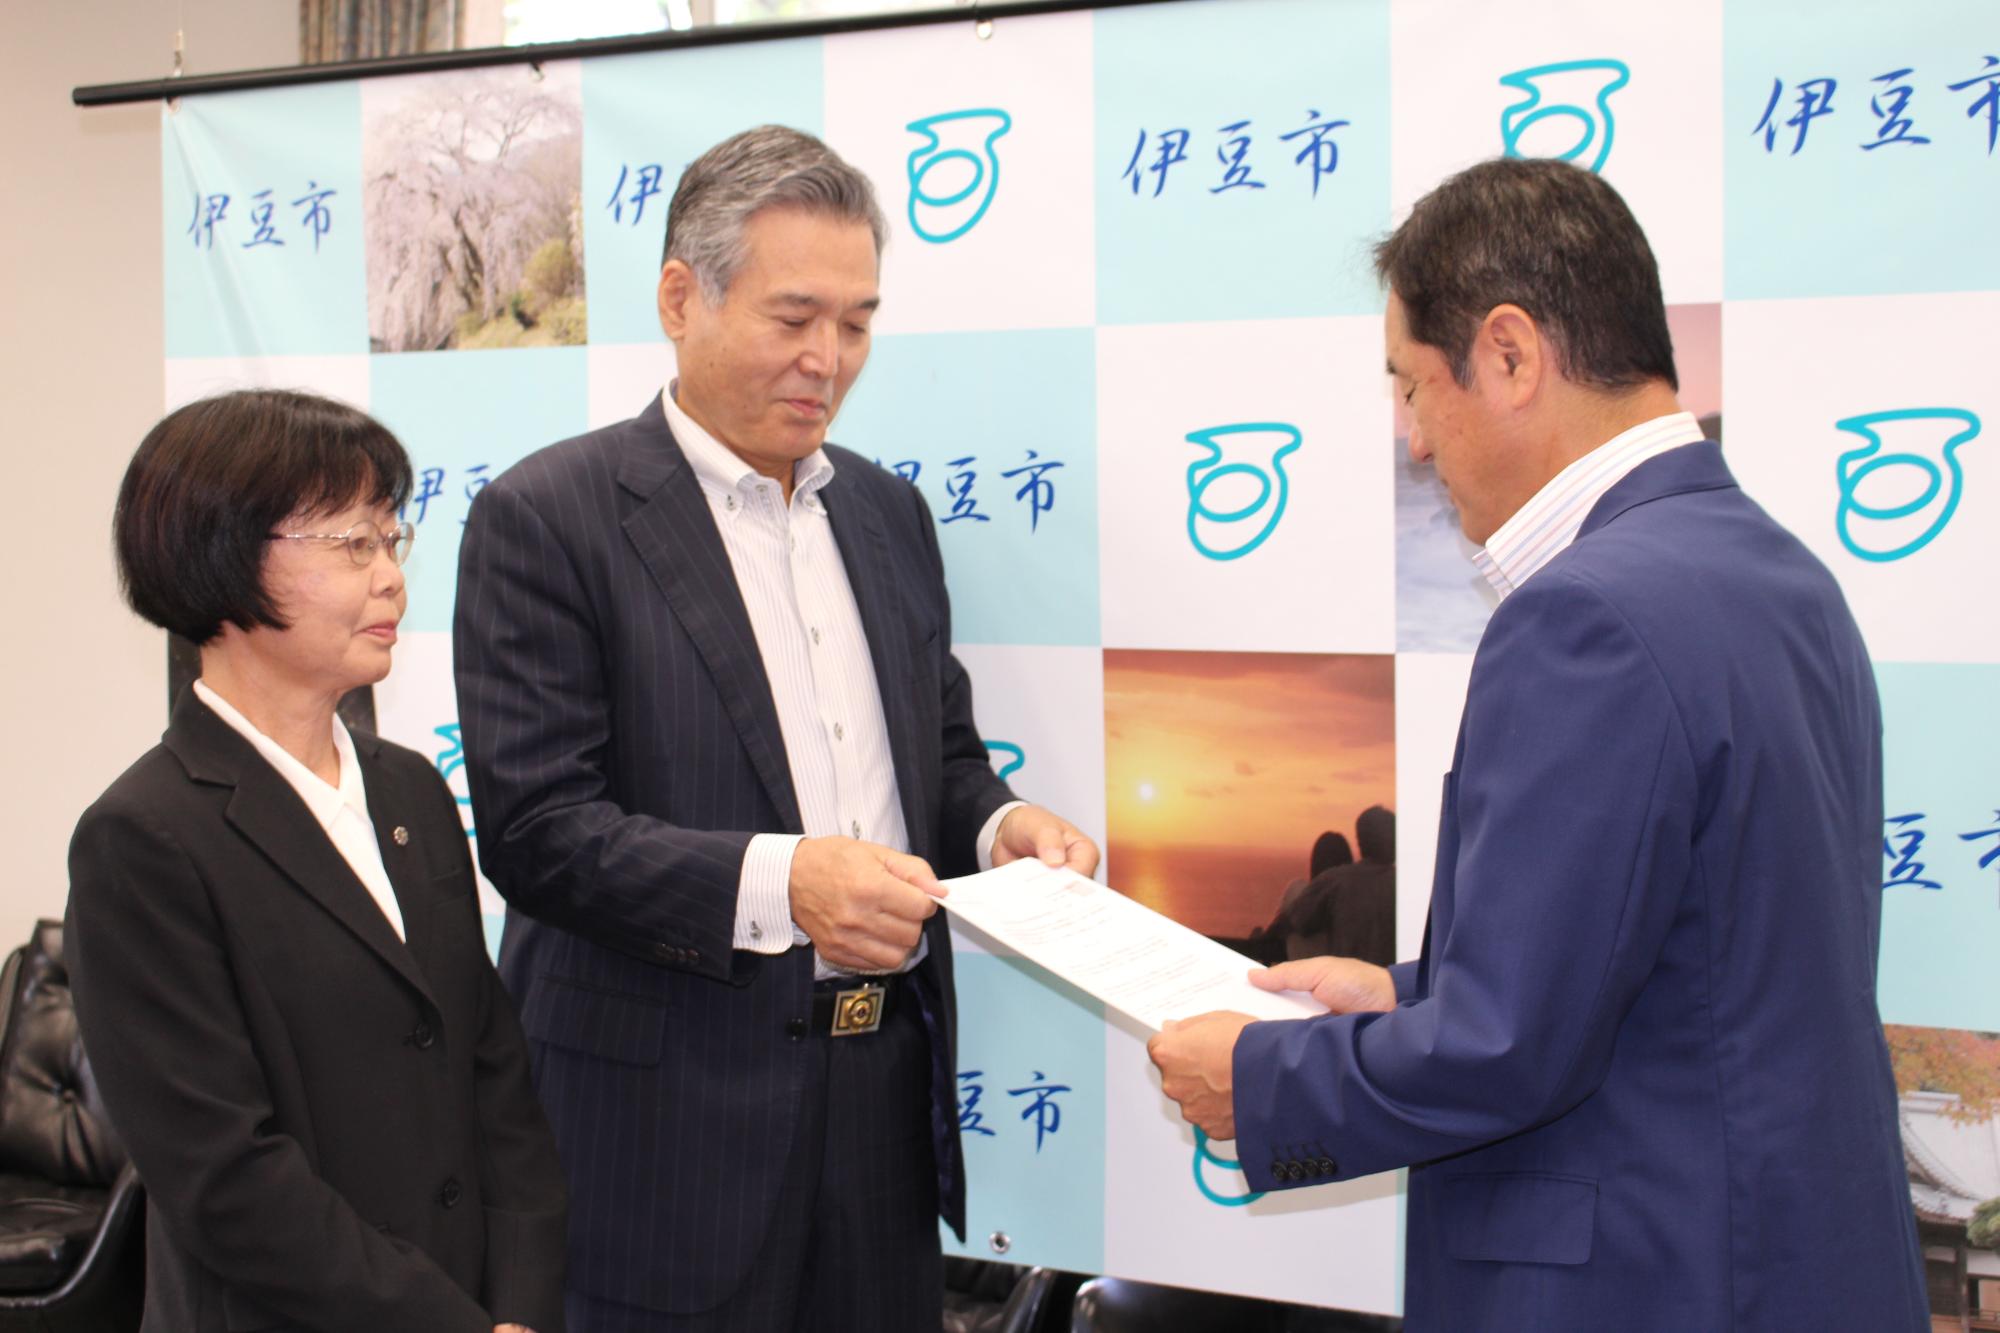 飯田会長・内田副会長が横に並び、飯田会長が市長に答申書を手渡している様子の写真